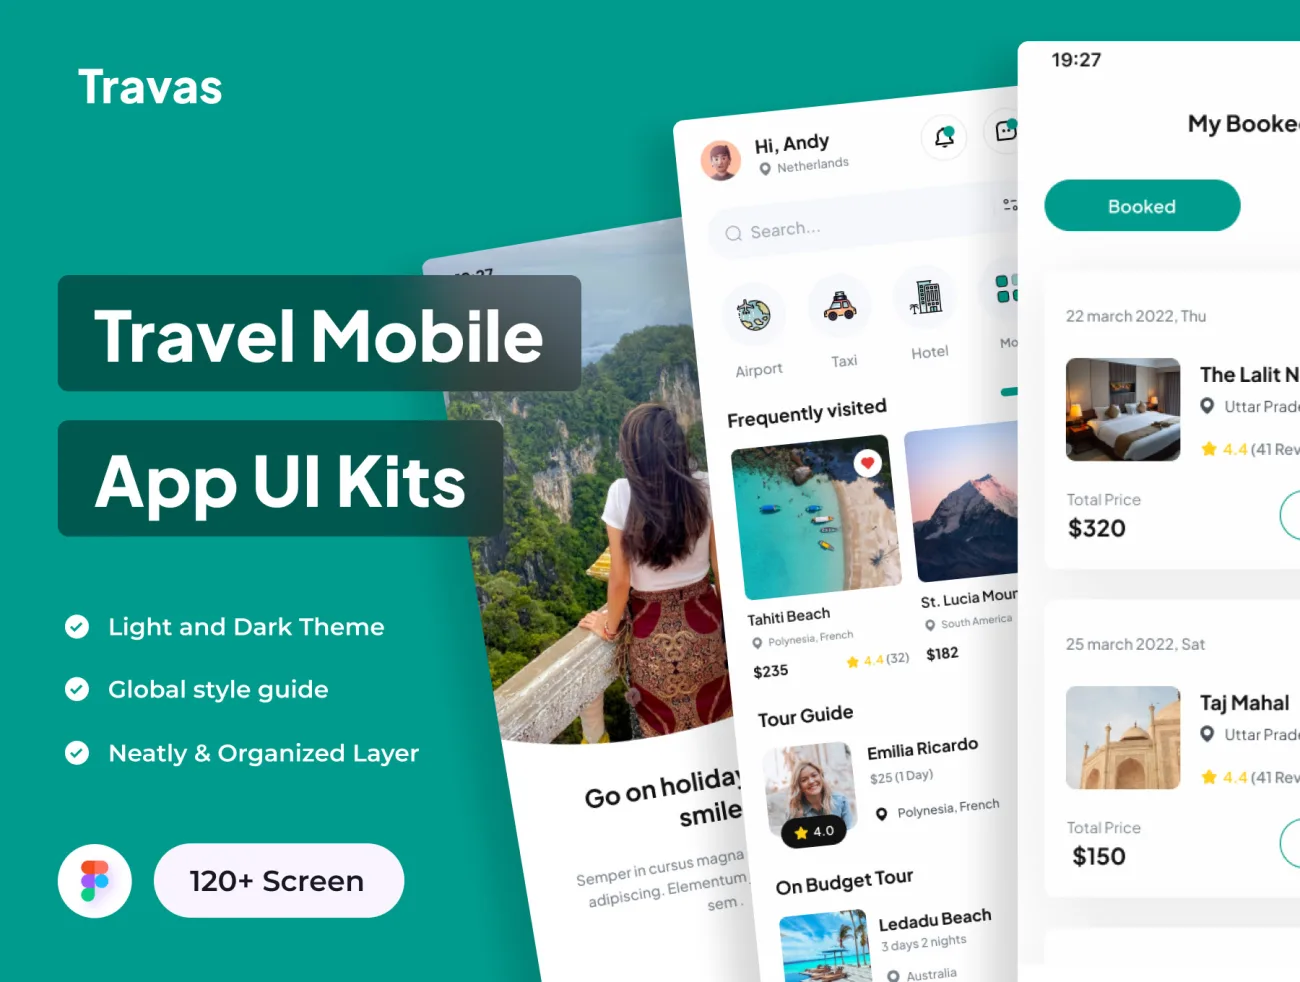 120屏景点旅游门票预定应用UI设计套件 Travas - Travel Mobile App UI Kits .figma-UI/UX、ui套件、主页、出行、应用-到位啦UI